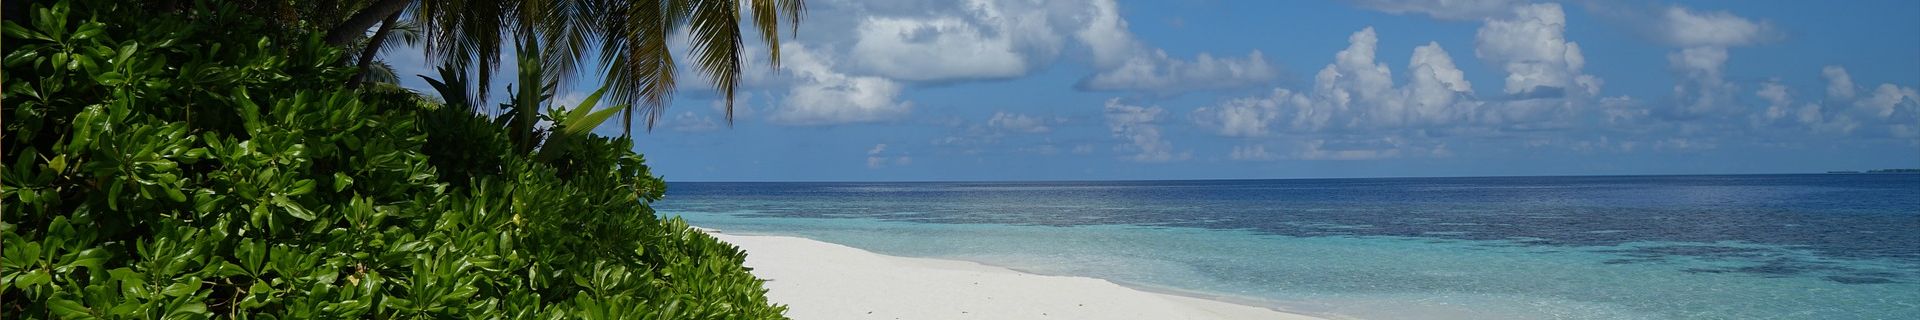 Mafia Island Strand mit indischem Ozean